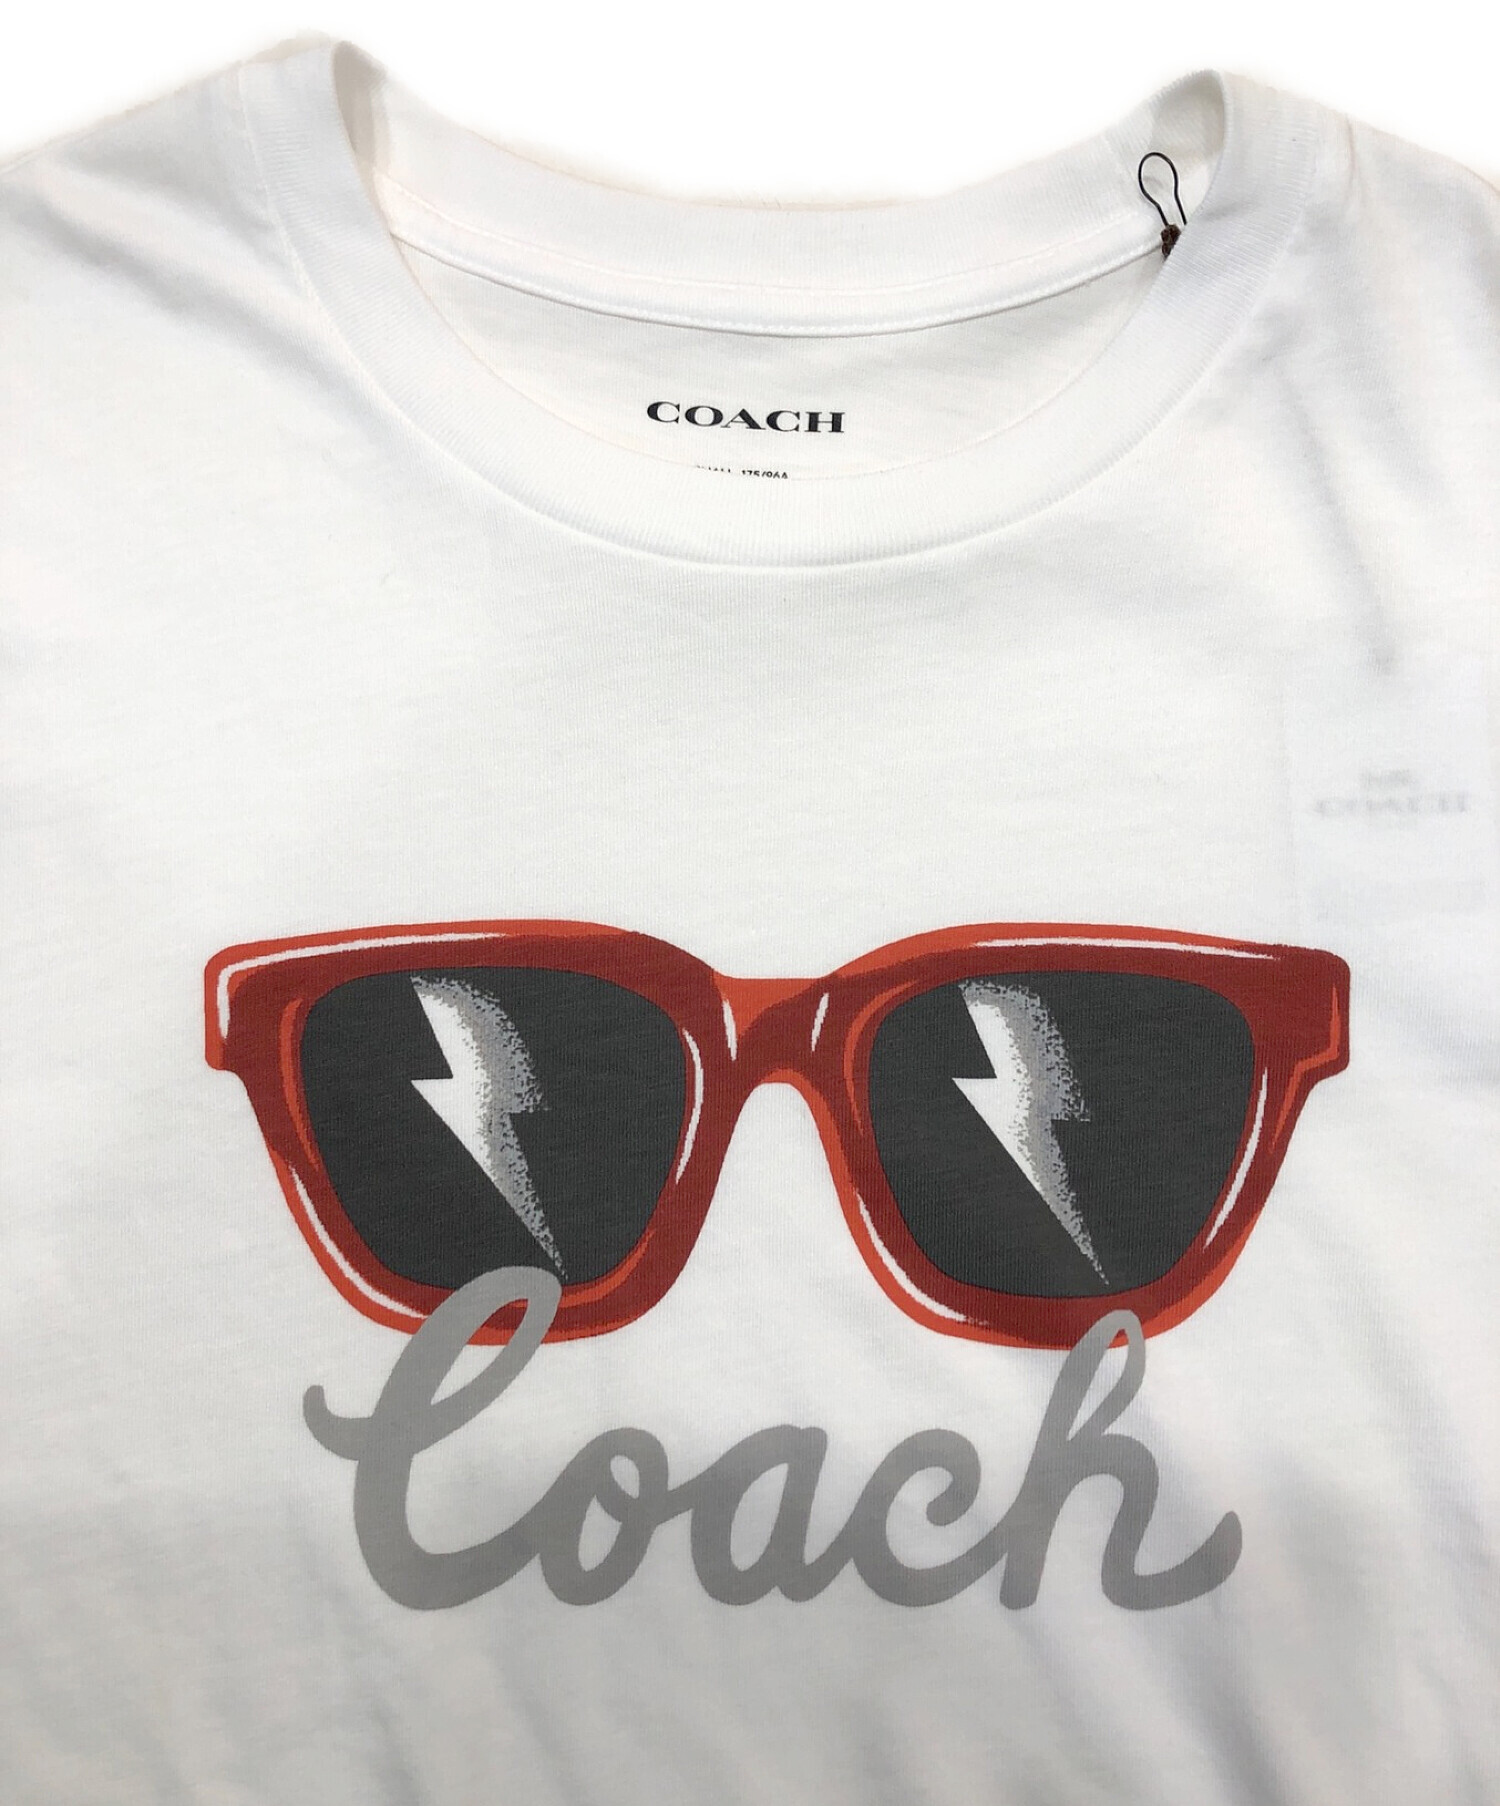 ☆COACH コーチ ブランド ロゴ デザイン Tシャツ 半袖/メンズ/S64cm身幅